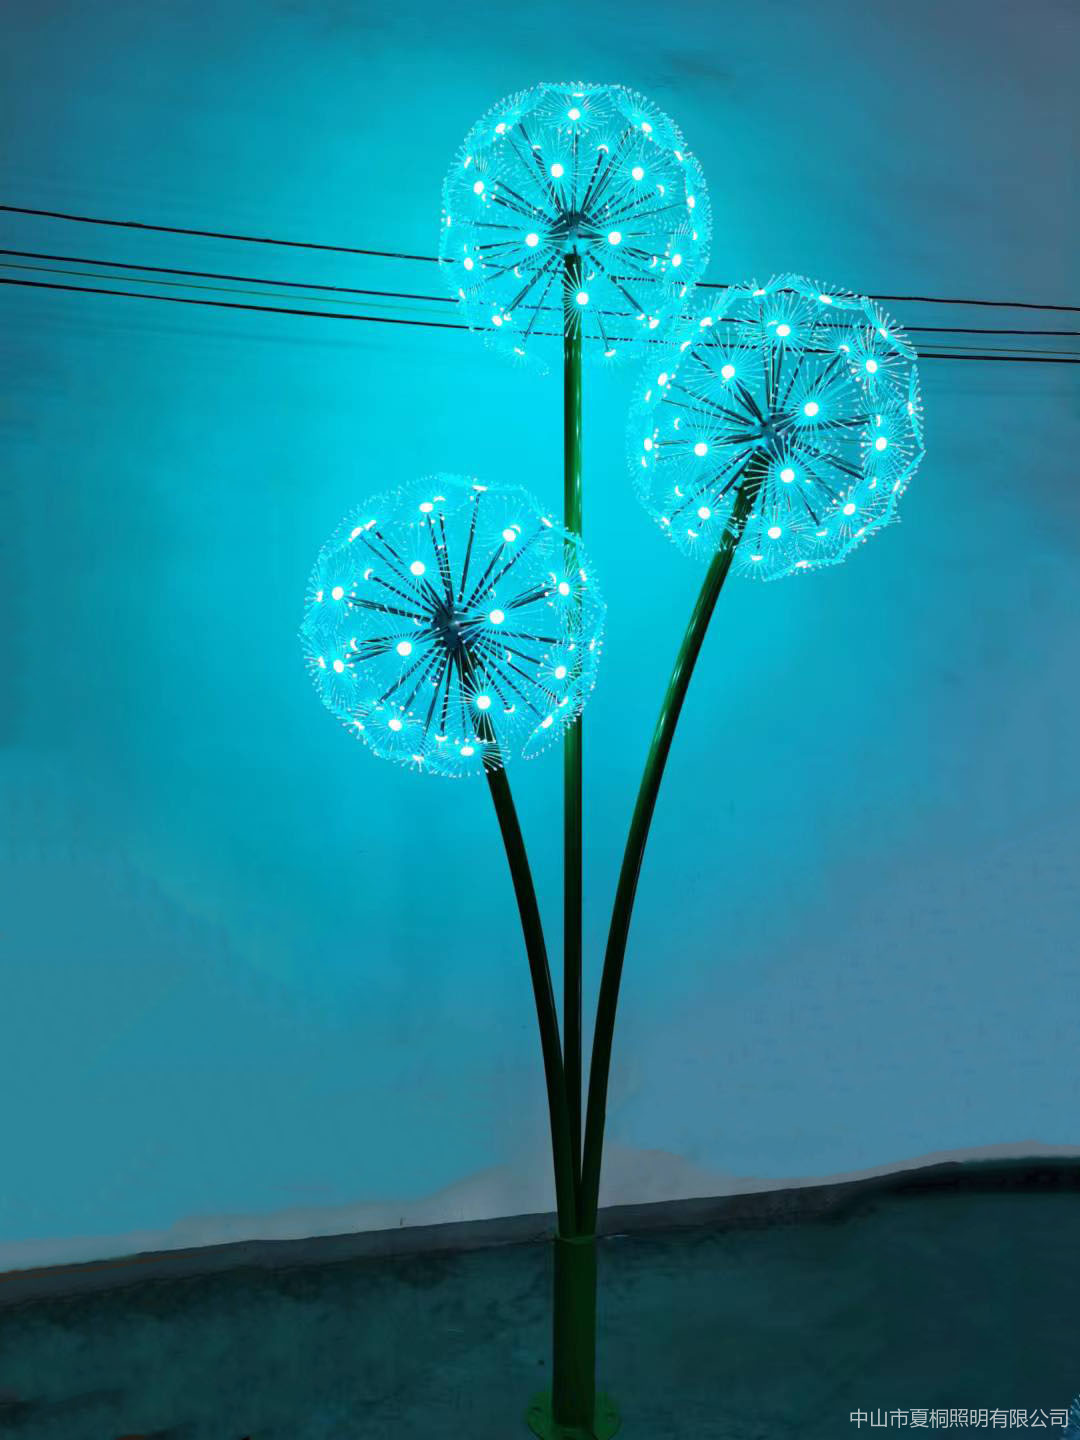 户外草坪蒲公英景观灯户外蒲公英灯球雕塑装置铭星厂家订做LED蒲公英灯一条龙服务